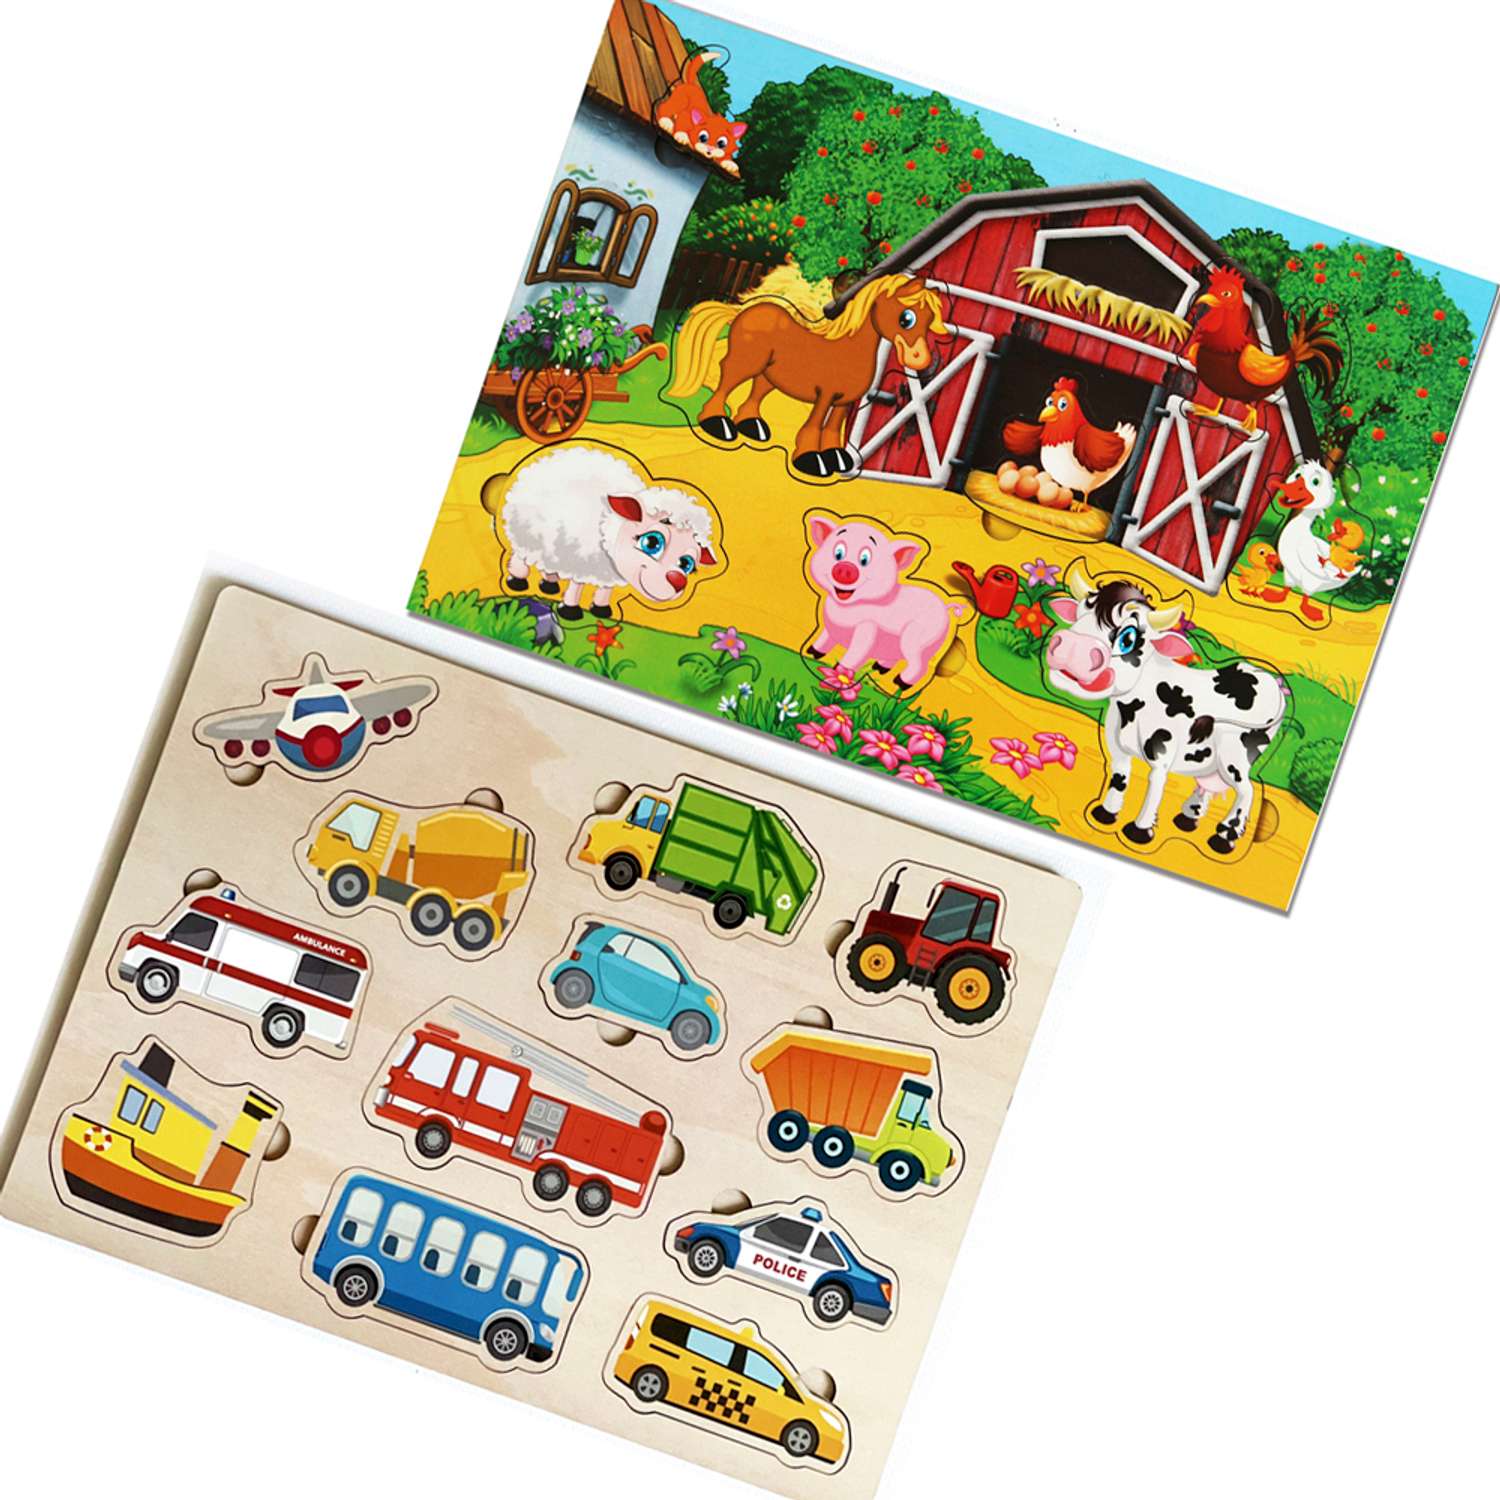 Игровой набор Parrot Carrot рамки вкладыши для малышей Транспорт и Ферма 2 шт - фото 1